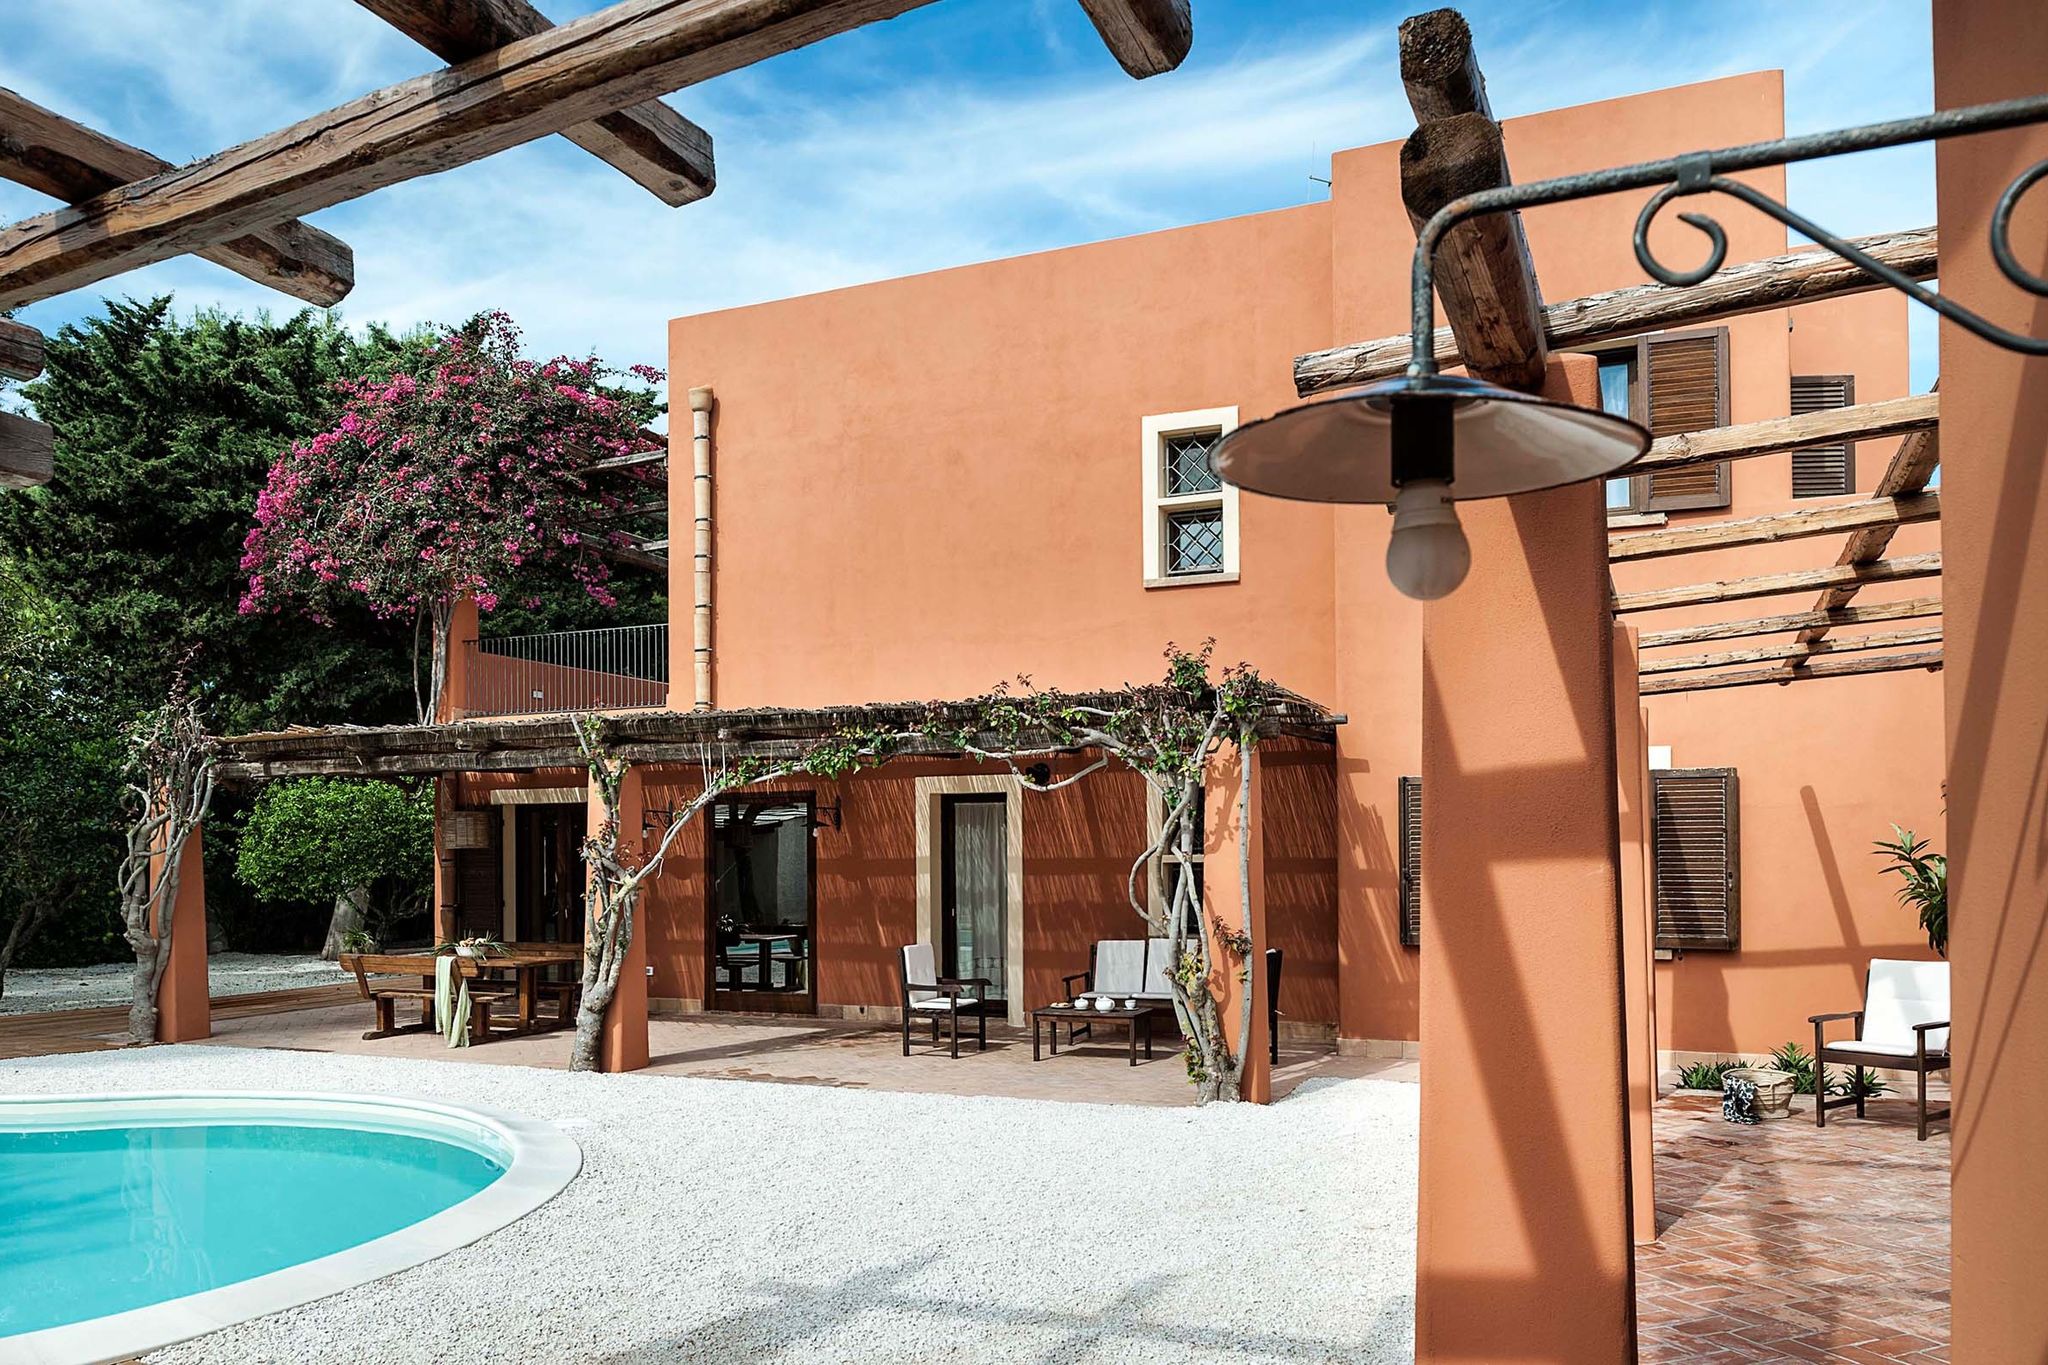 Fraaie villa met zwembad, gelegen in de omgeving van Marsala, een stadje aan zee